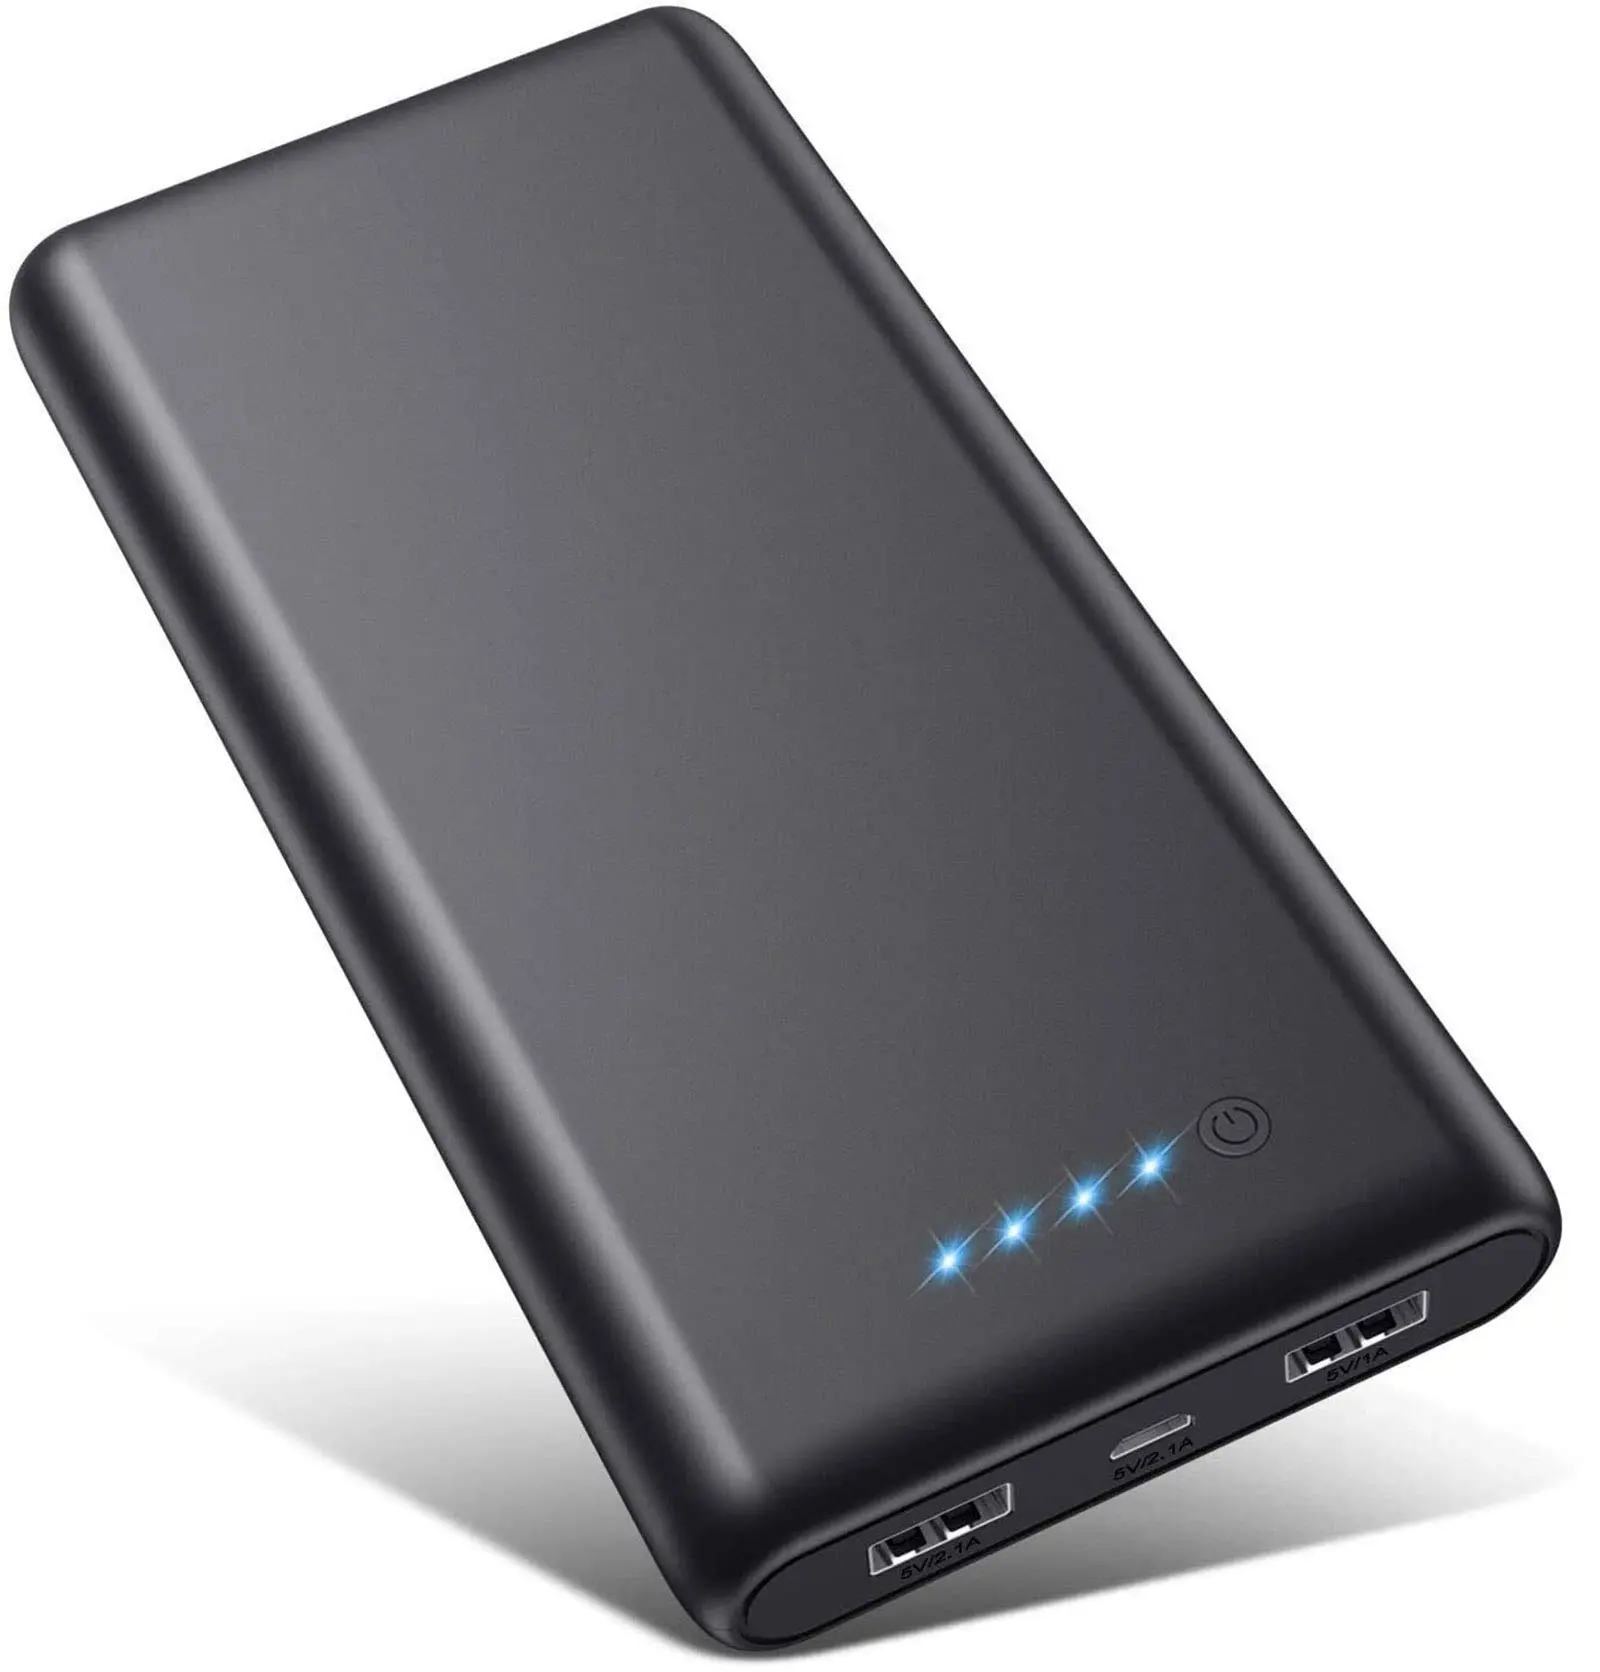 cargador de baterias de tablet o celular portatil - Qué pasa si cargo mi tablet con un cargador de celular